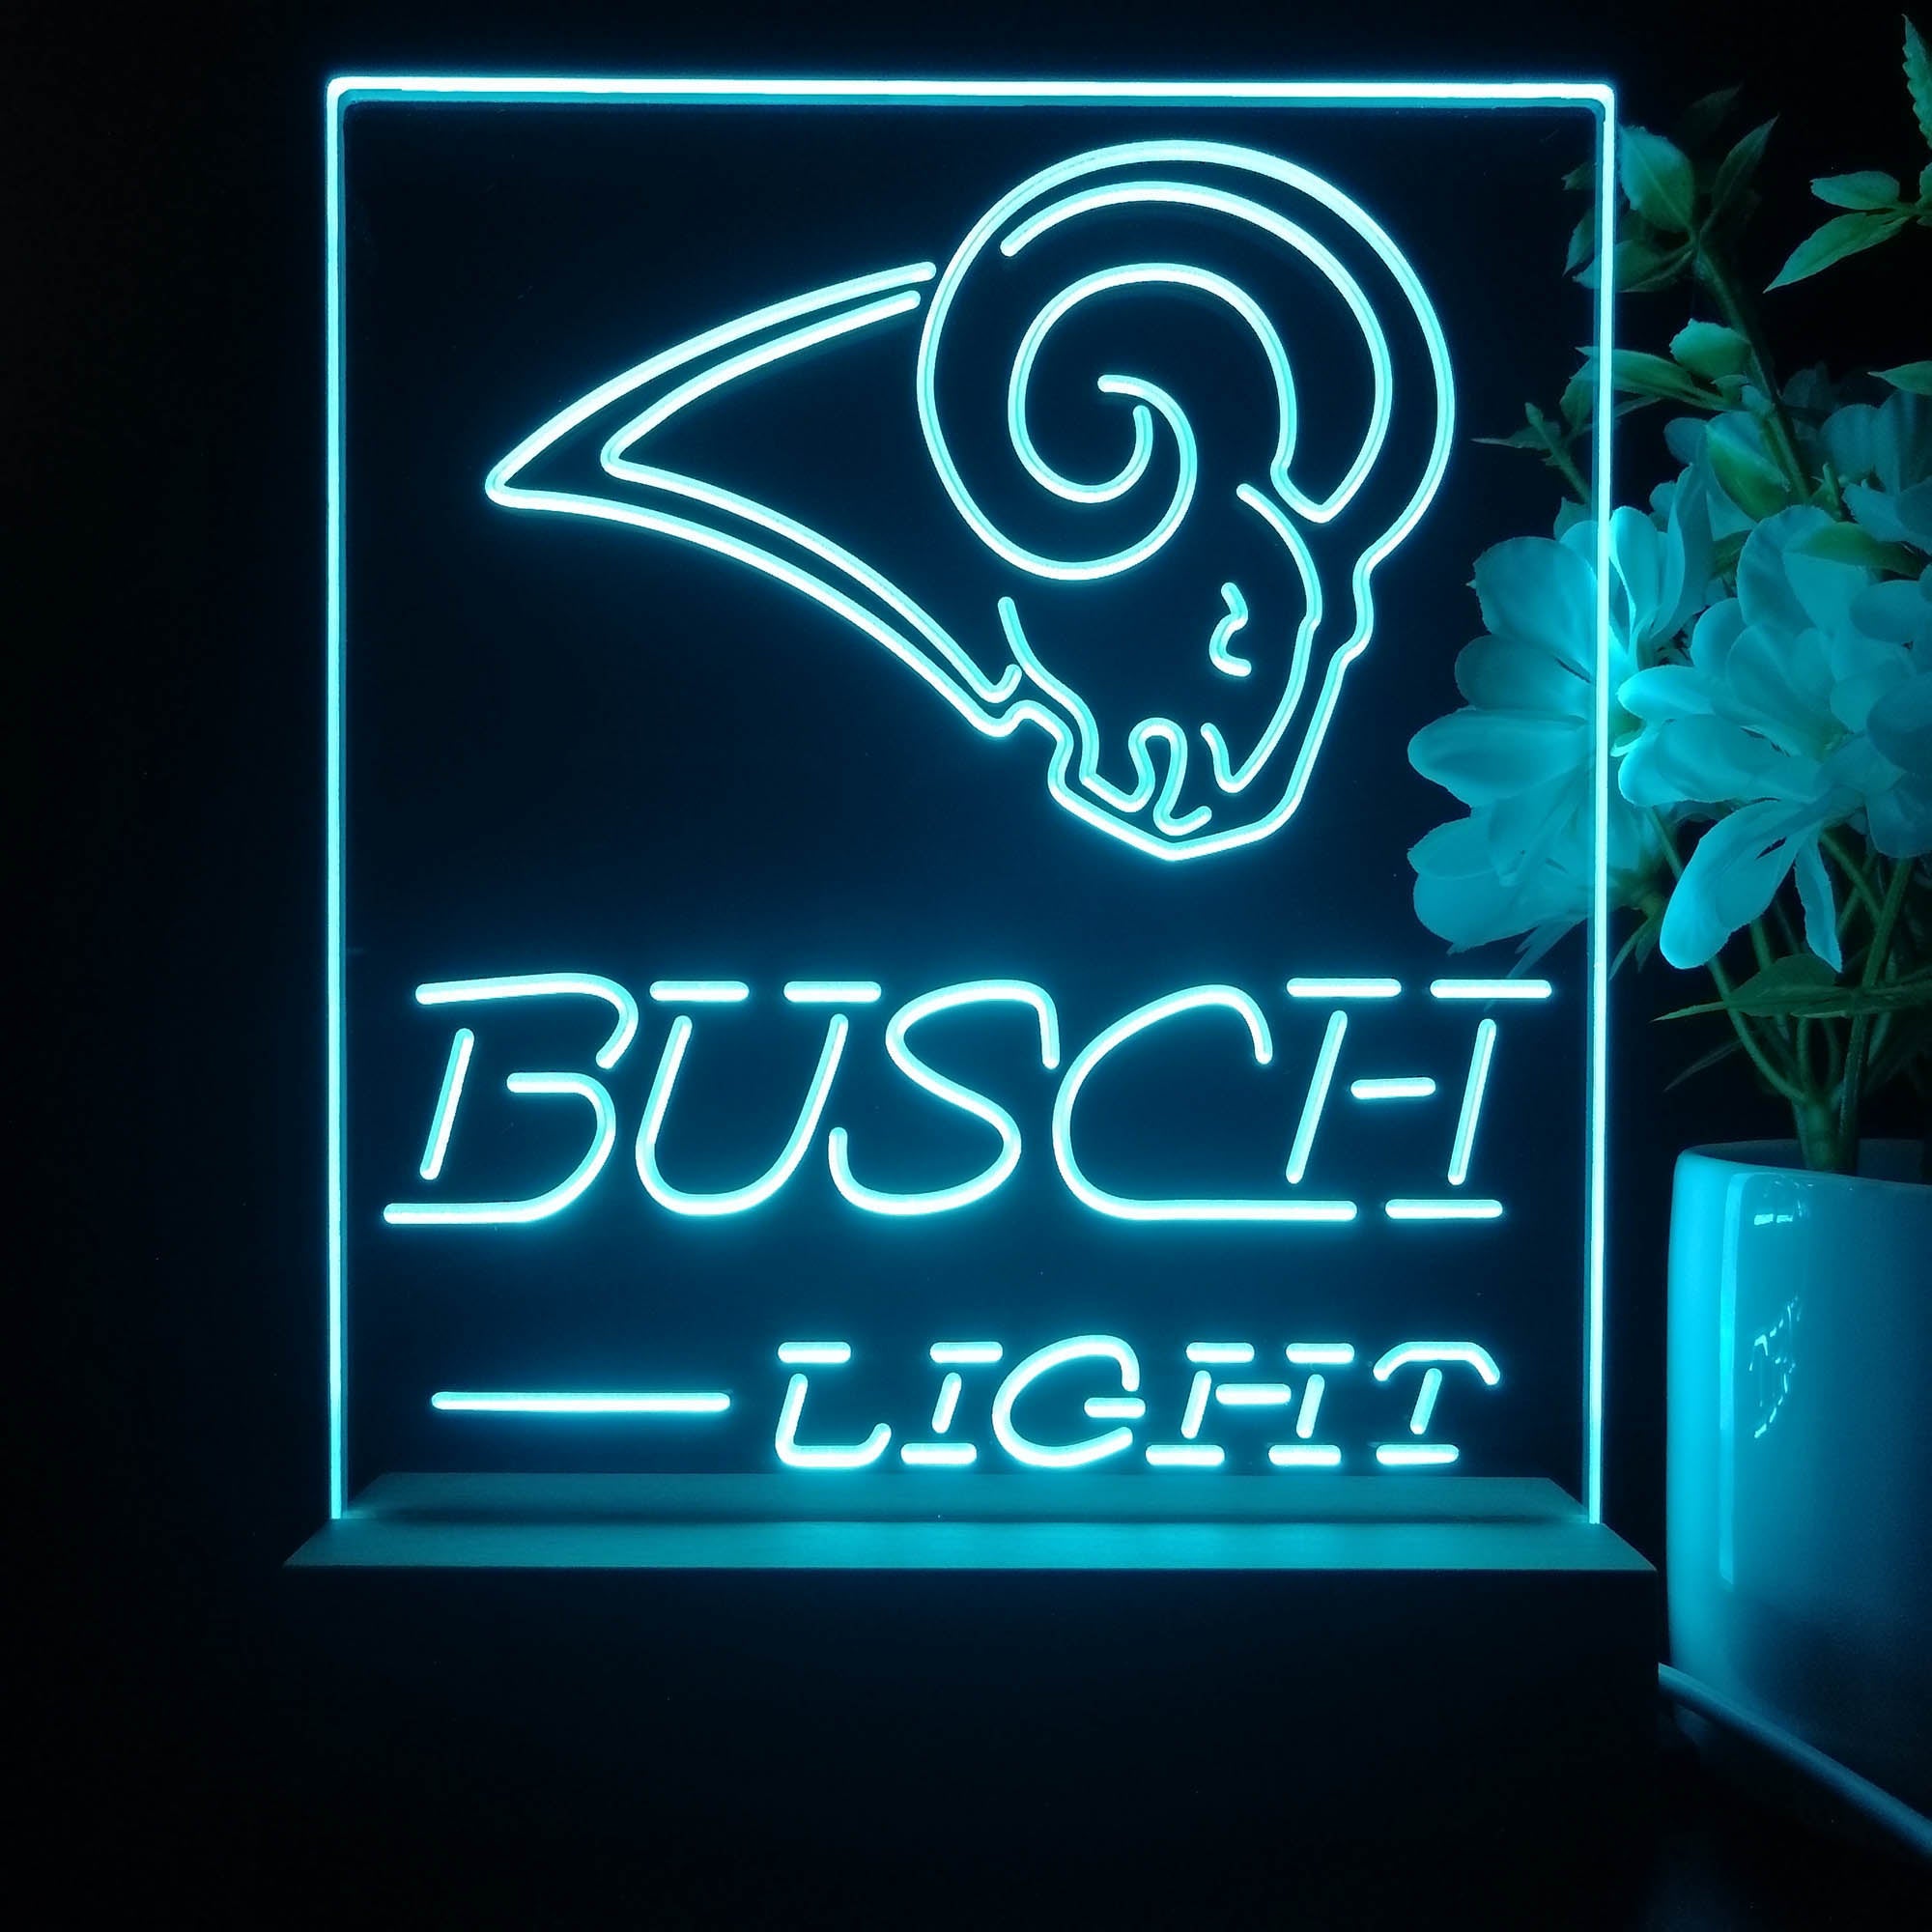 St Louis Rams Busch Light Neon Sign Pub Bar Lamp